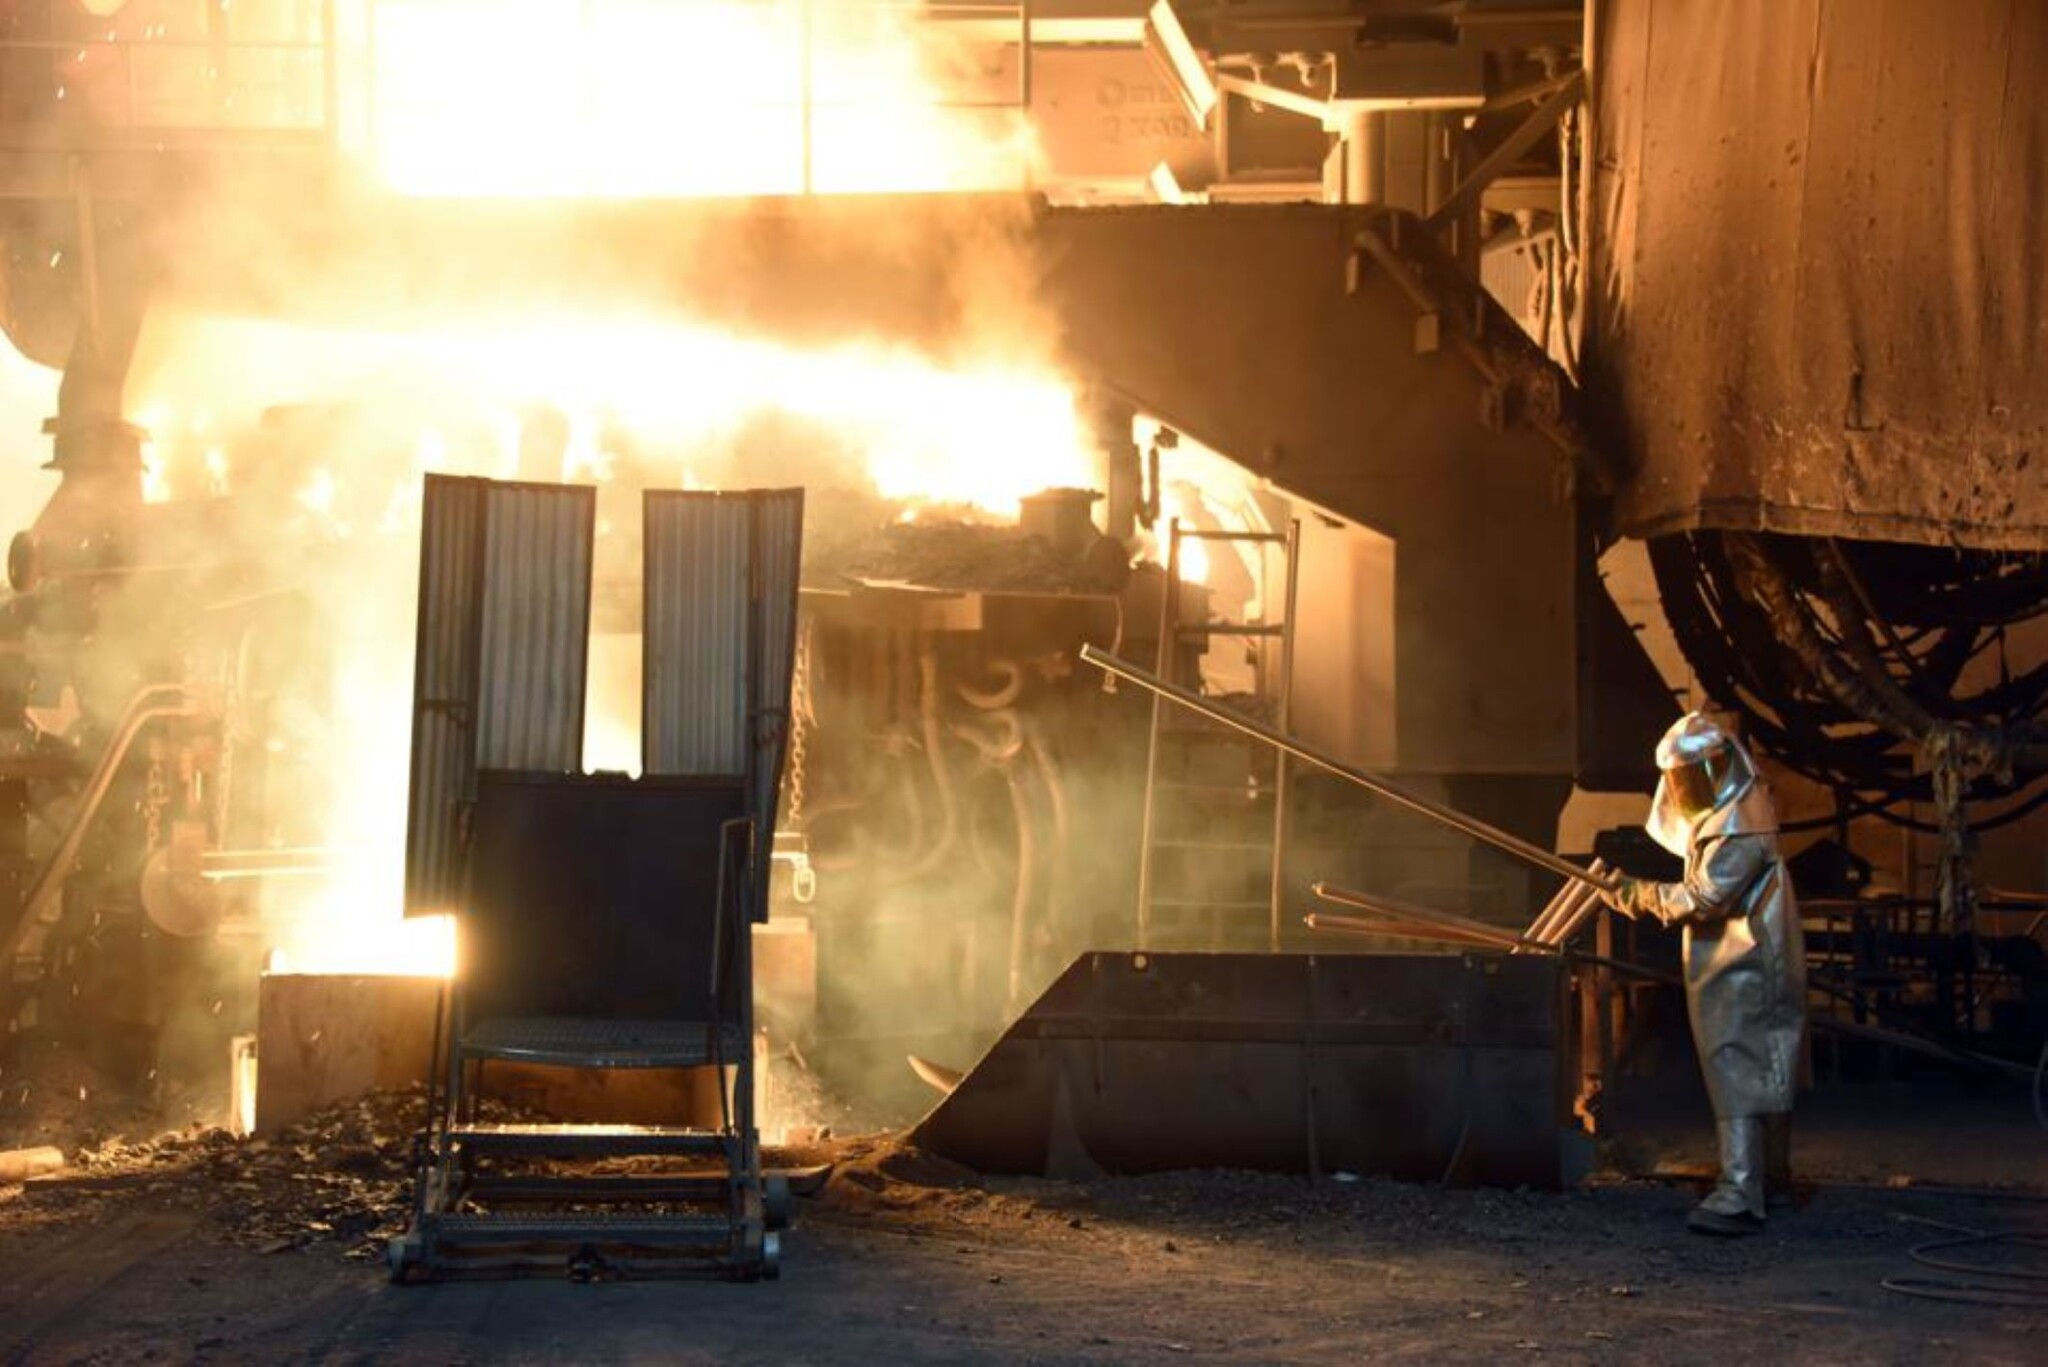 Indická ocelárna Tata žaluje Liberty Steel kvůli neuhrazeným dluhům